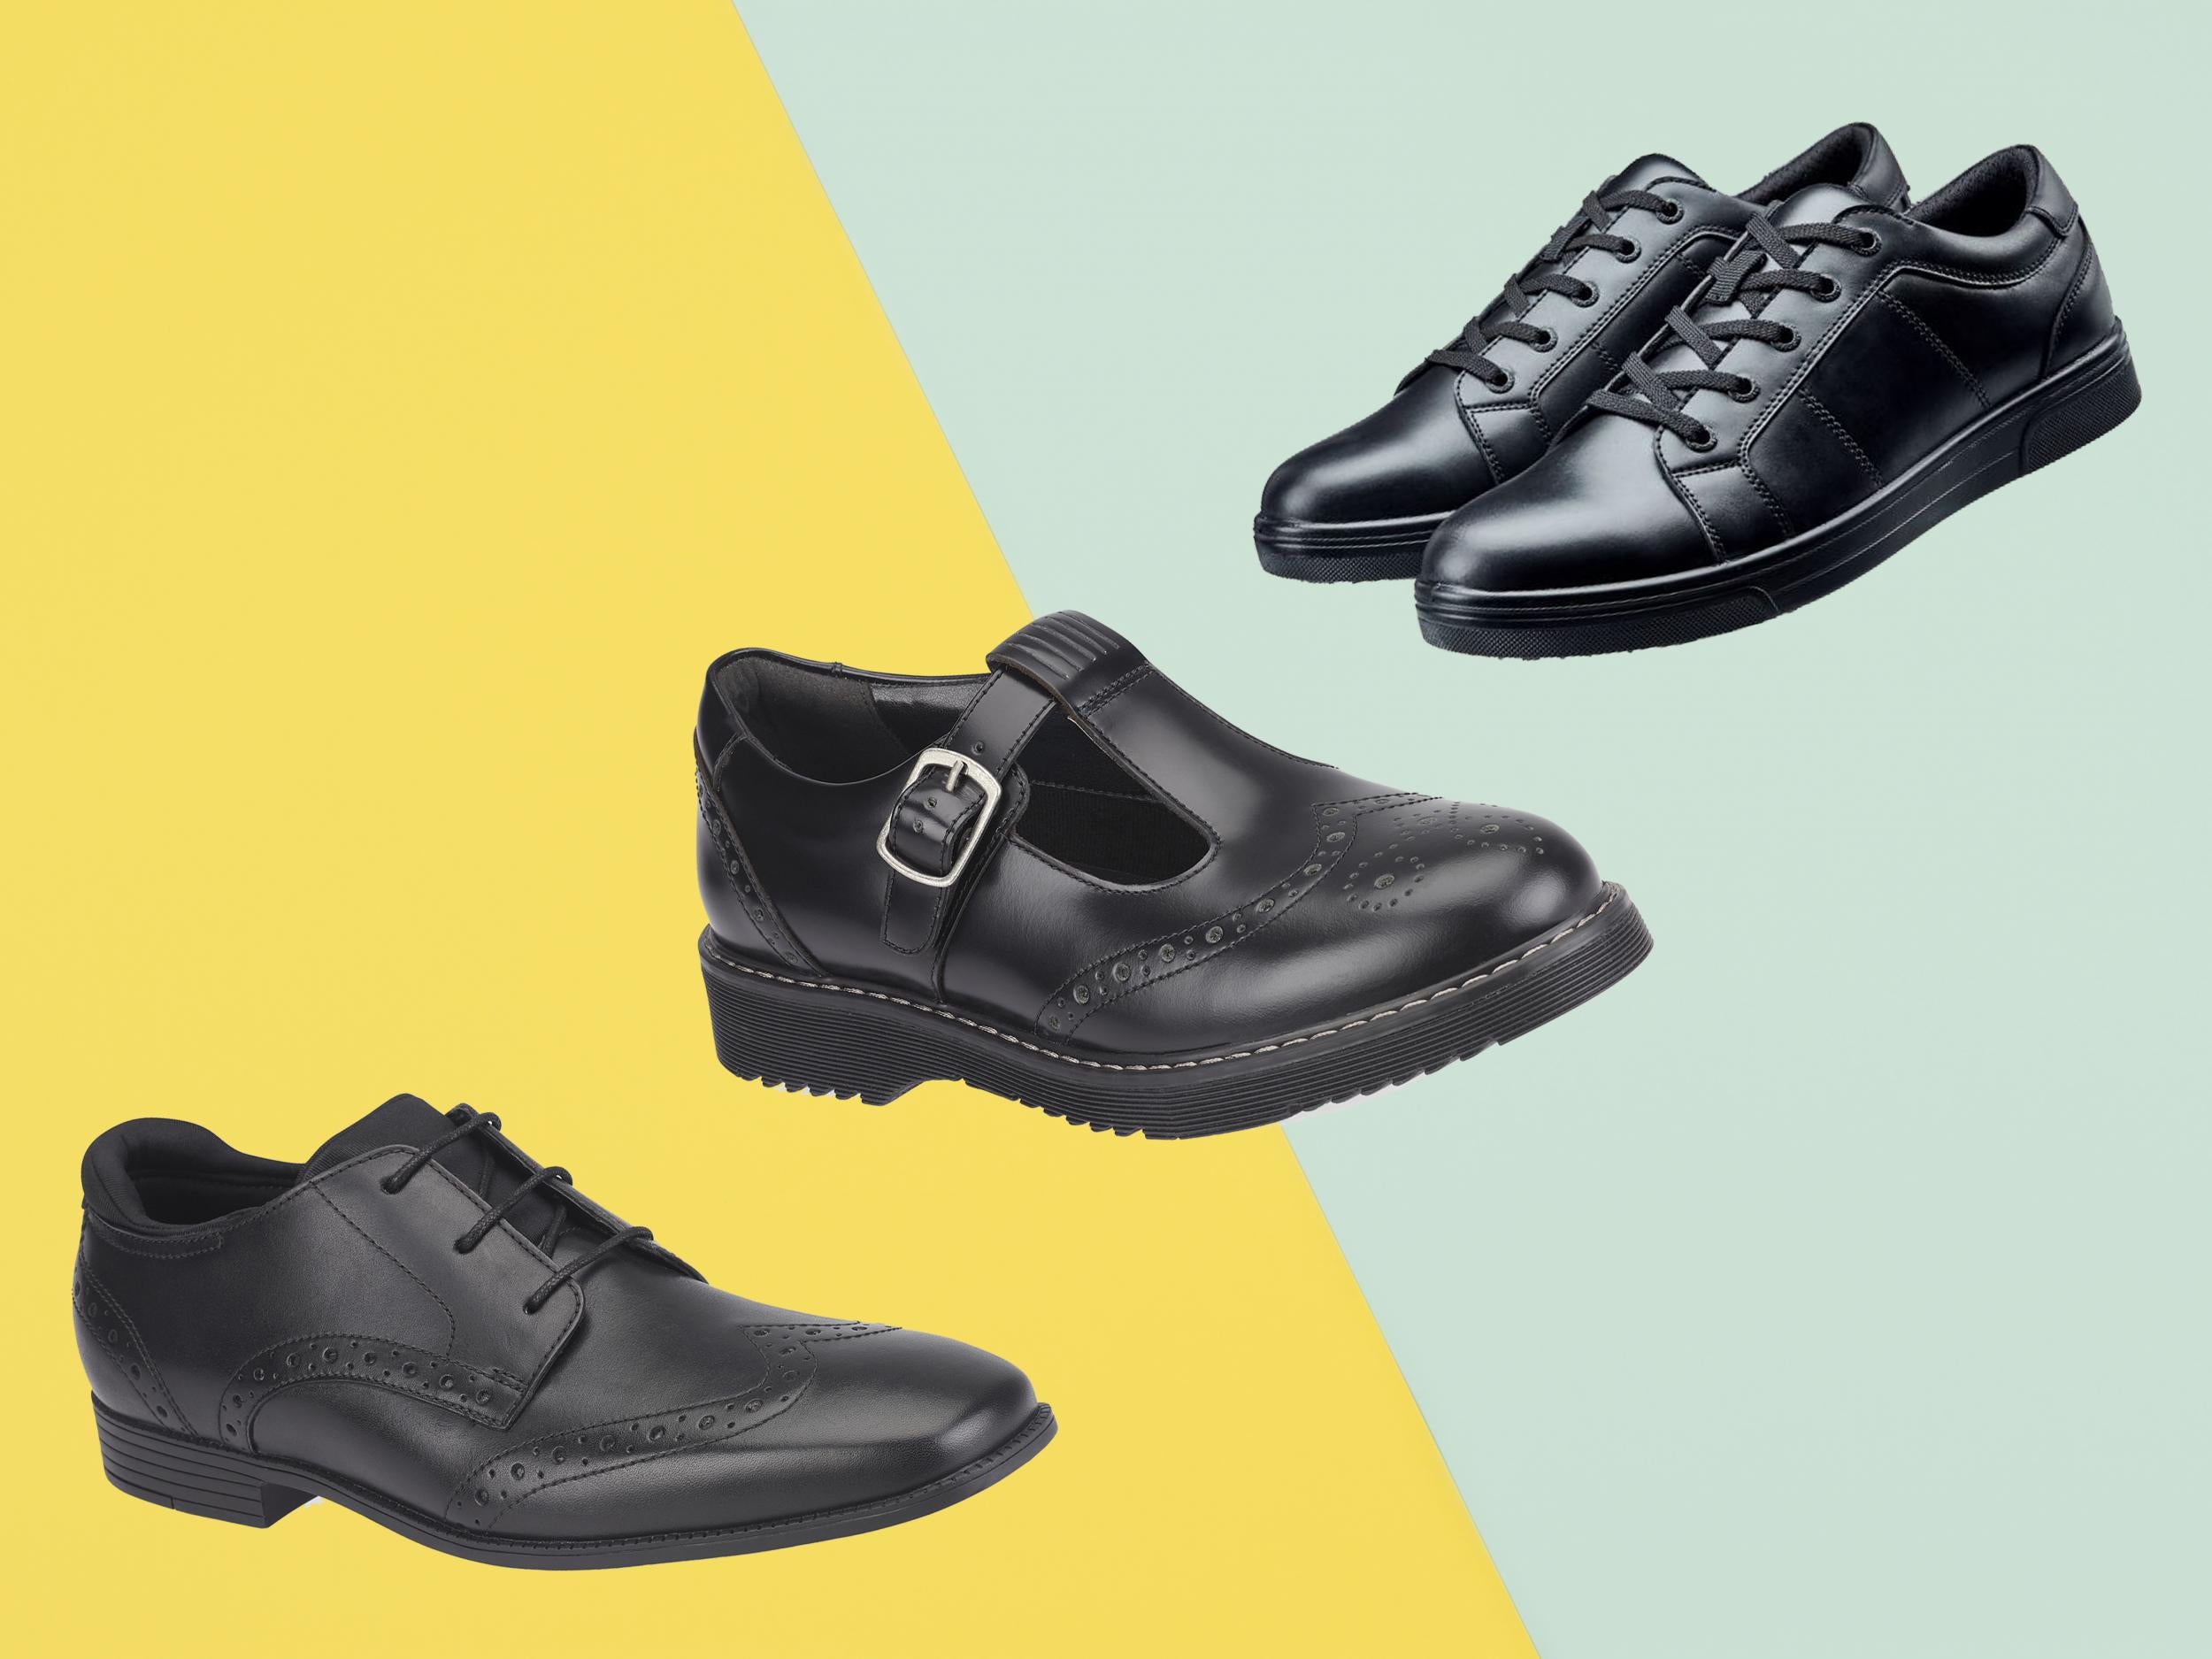 plain black leather school shoes